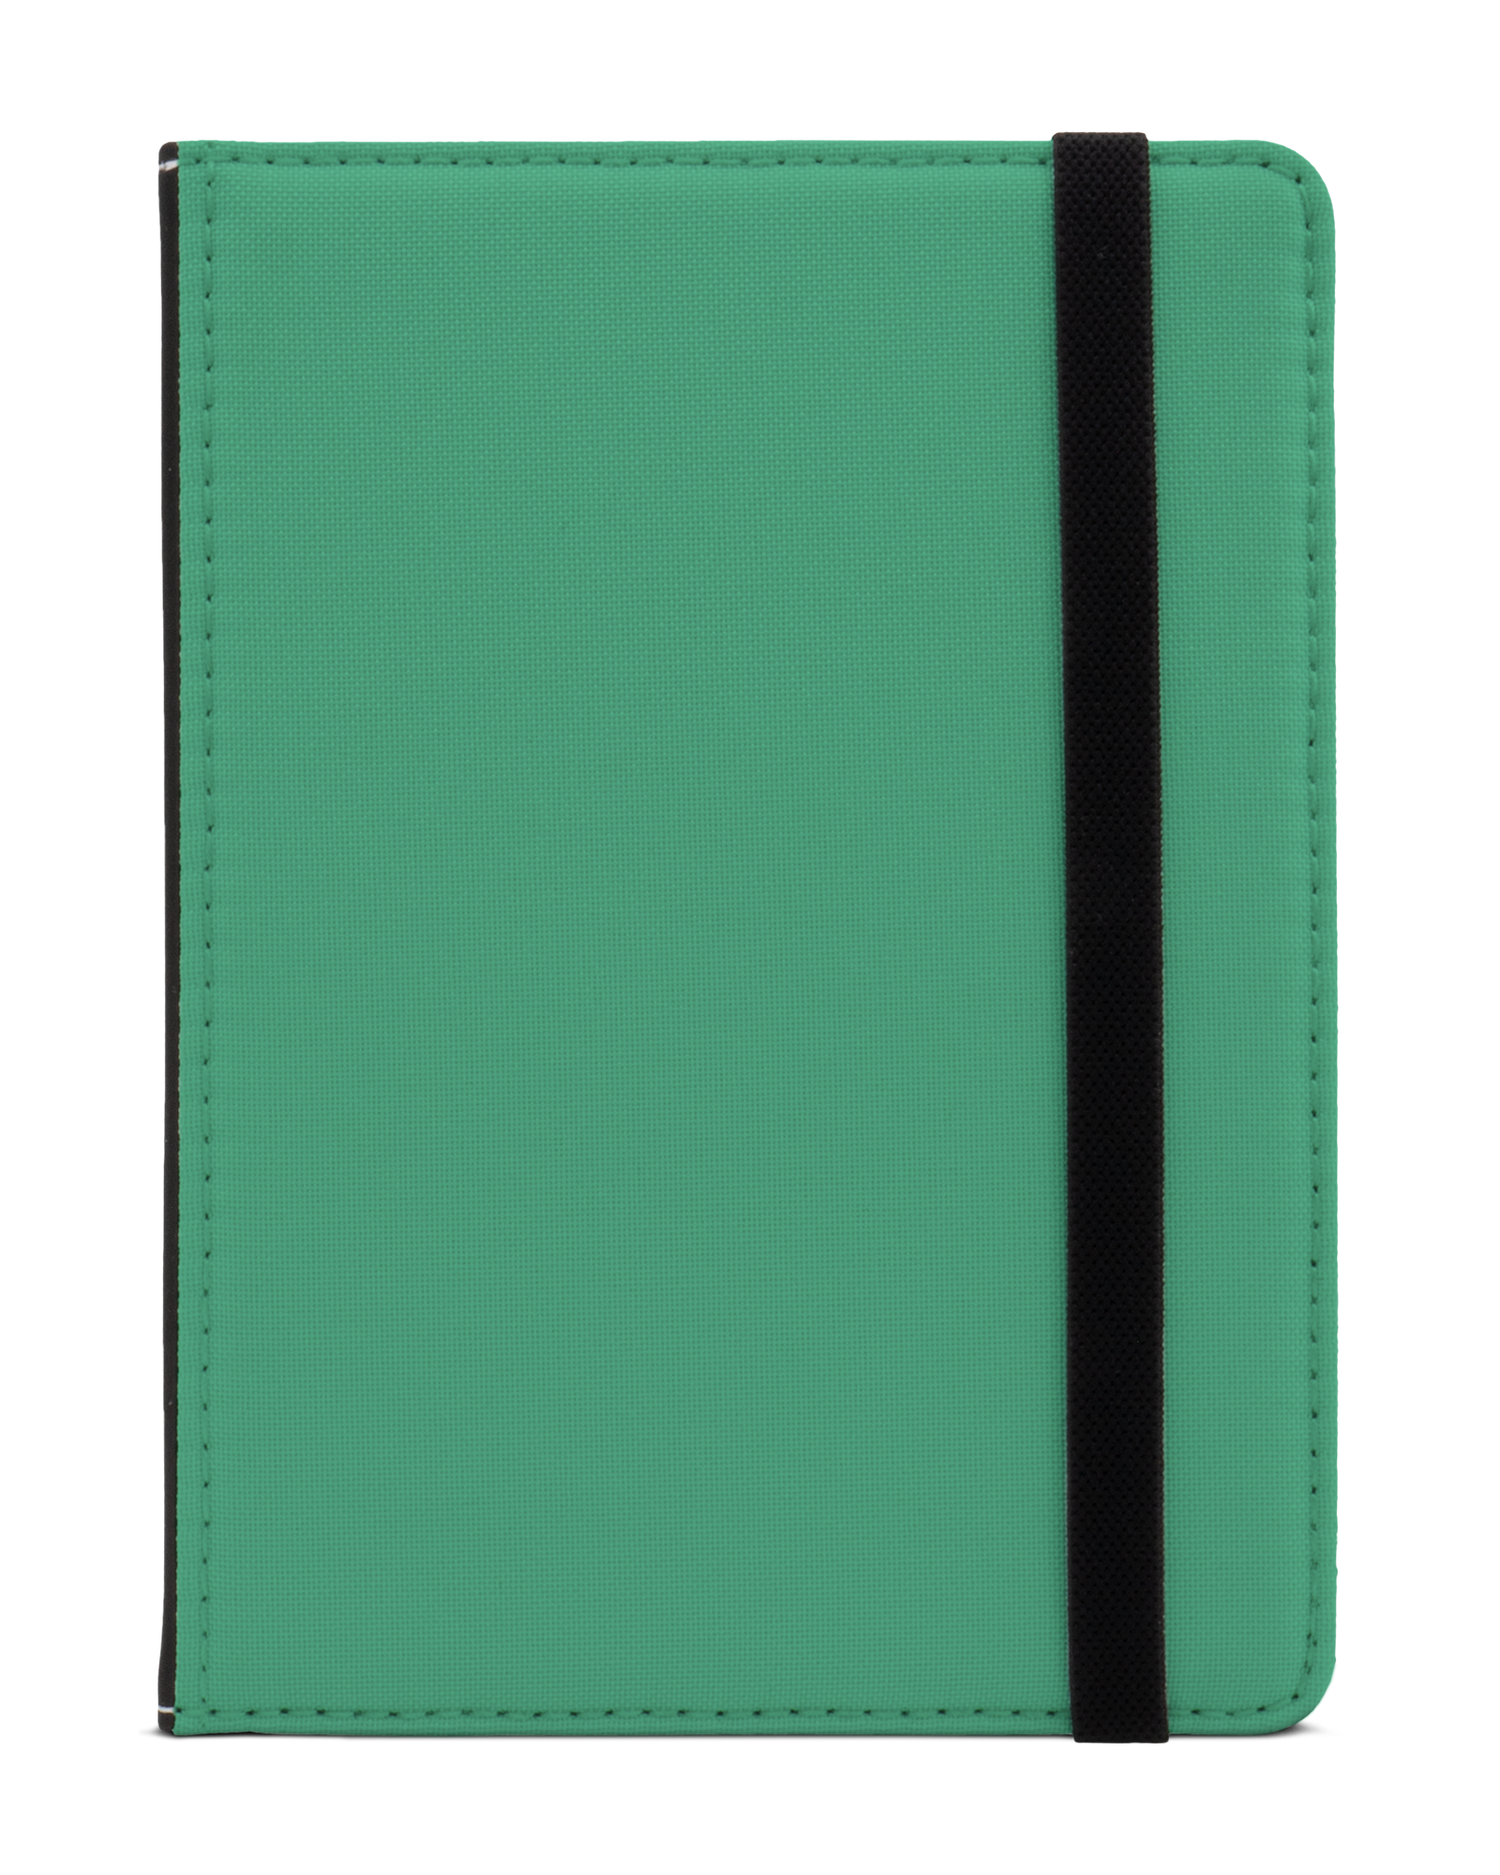 ISG Neon Green eReader Case XS: Front View